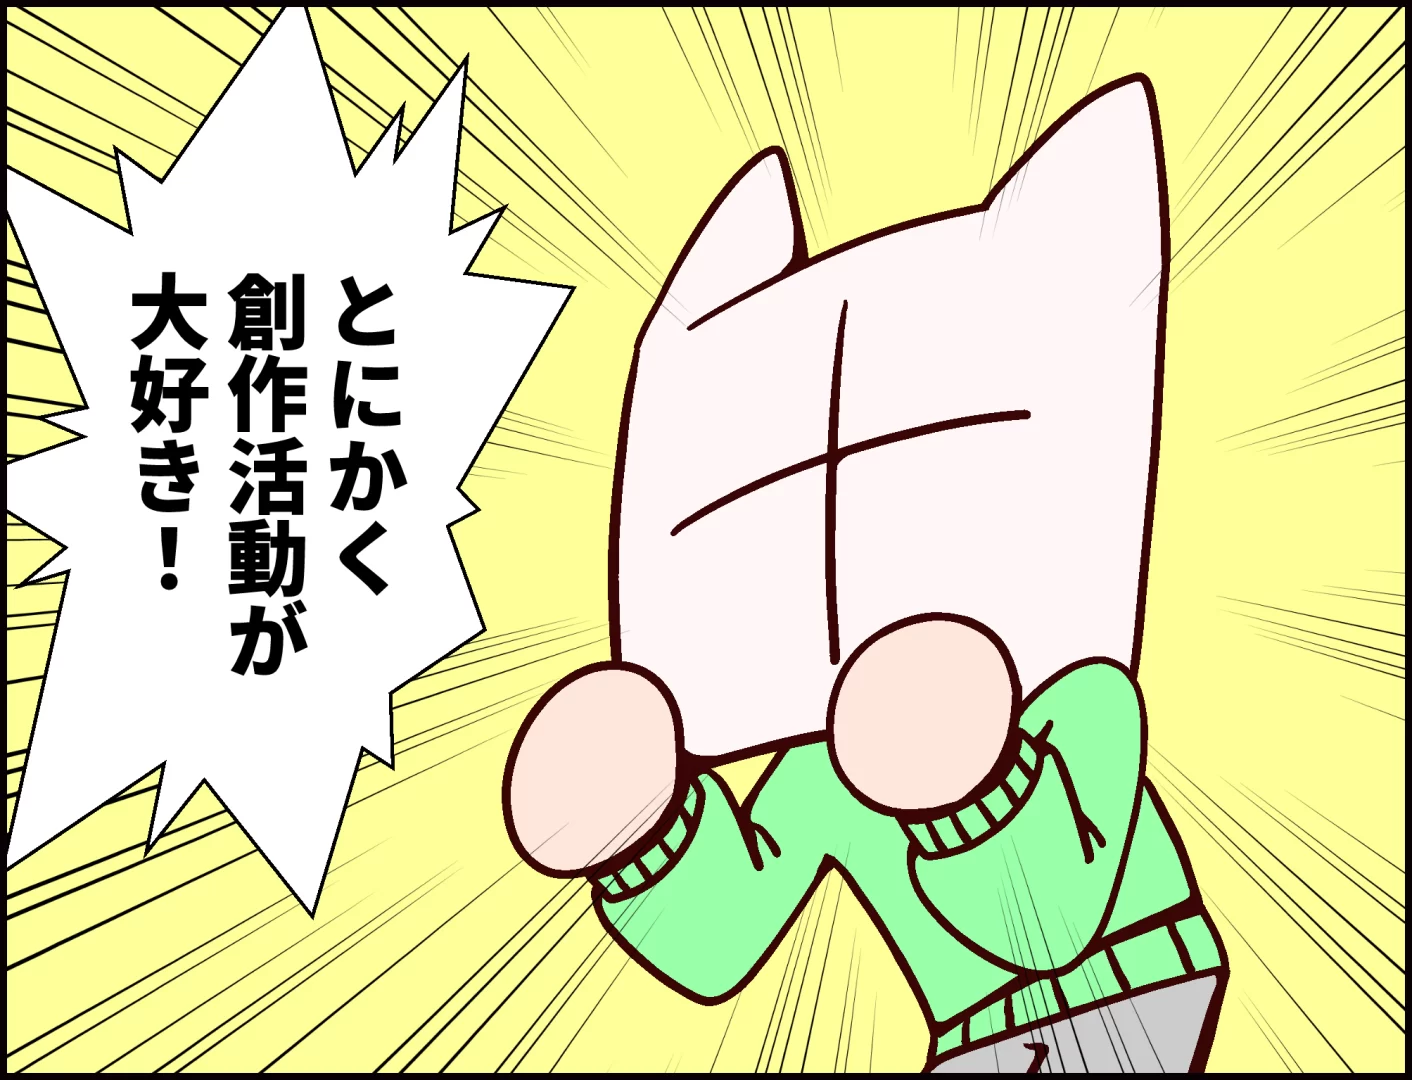 西野竜平の漫画「Nの日常」の画像